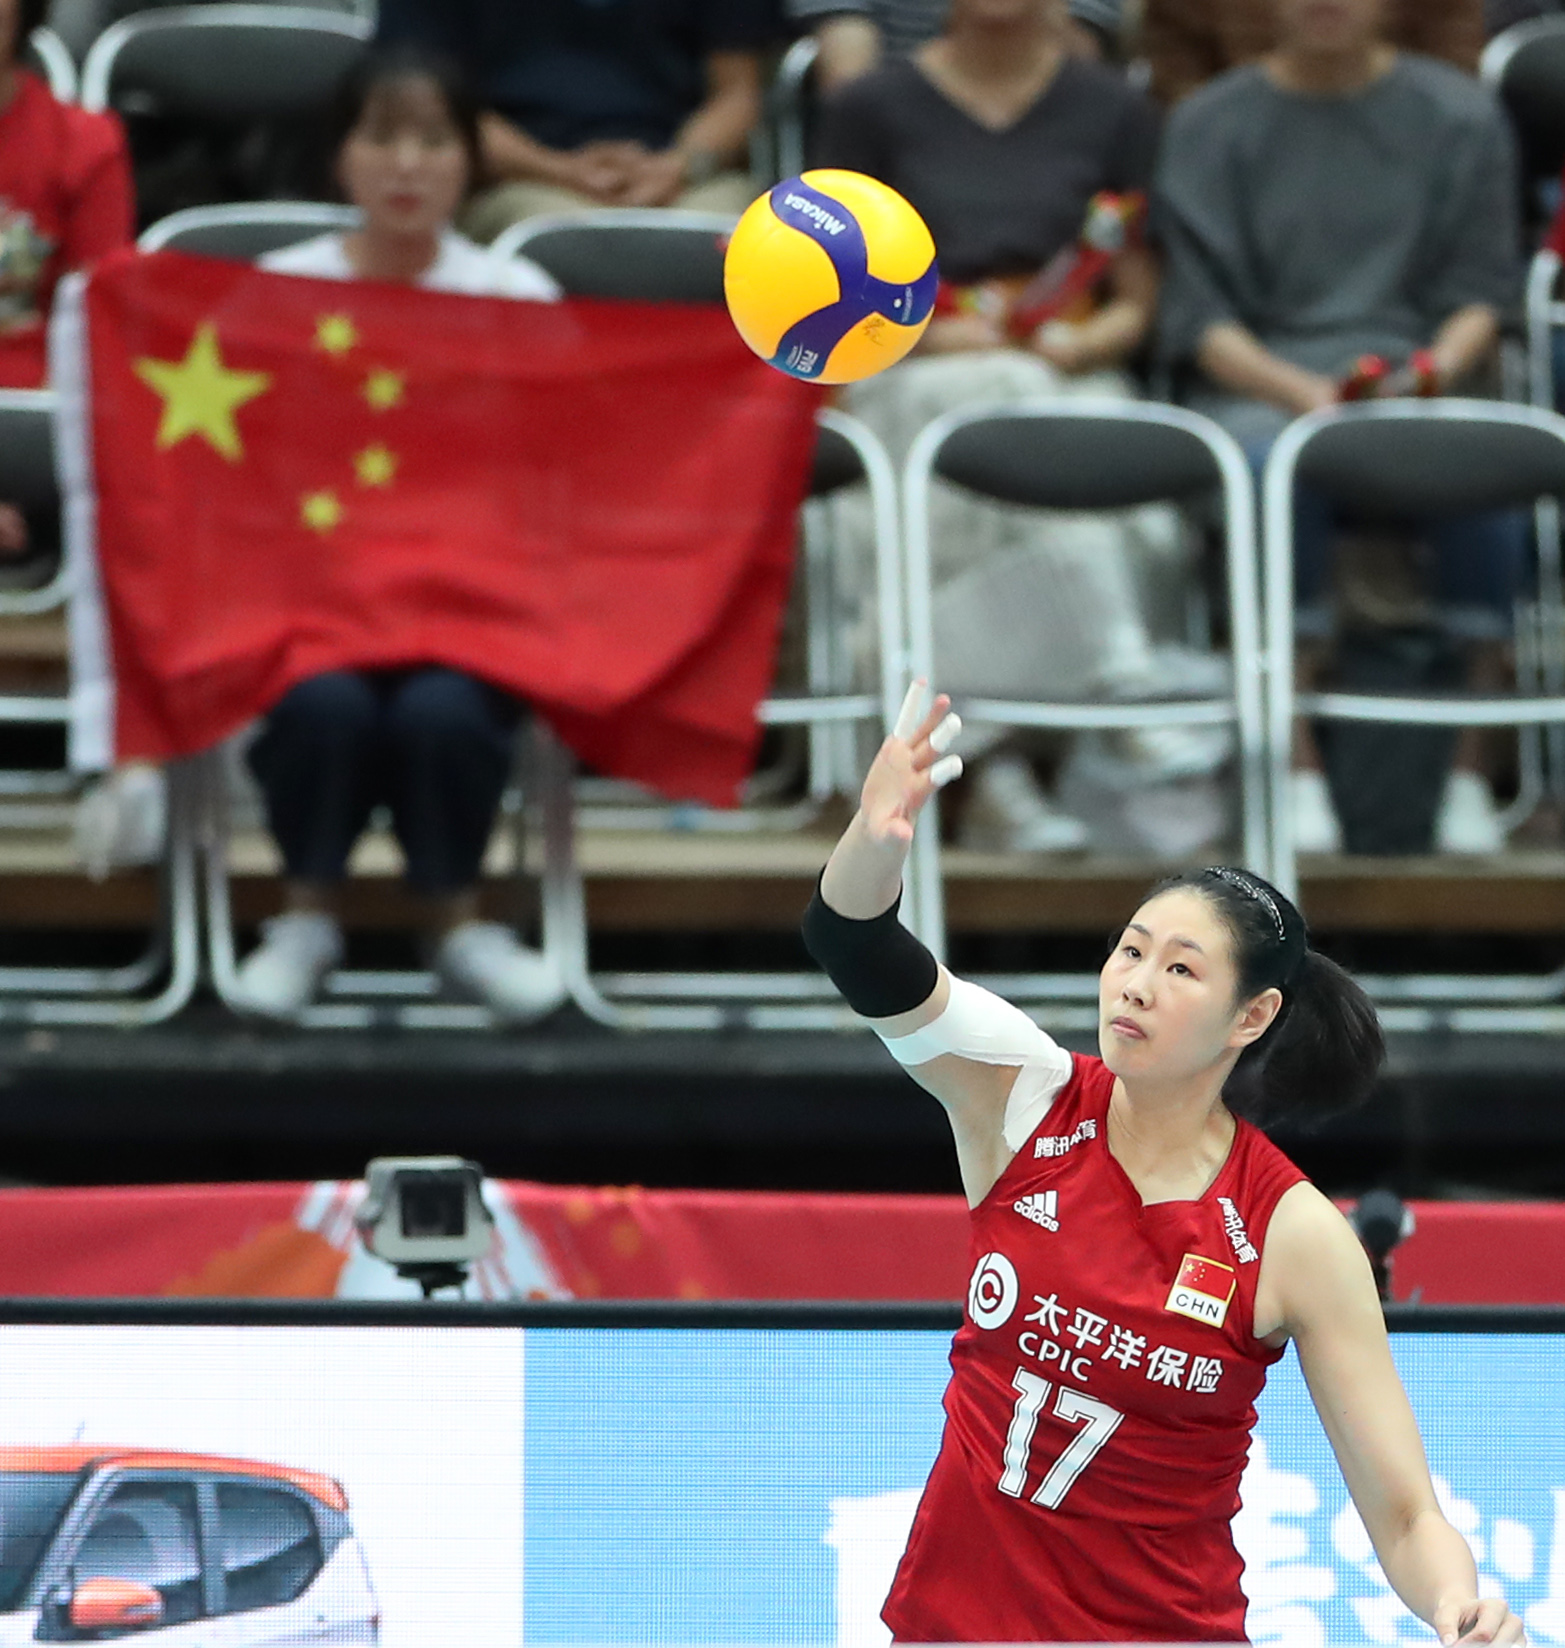 2019年9月29日,中国队颜妮在比赛中发球新华社记者杜潇逸摄